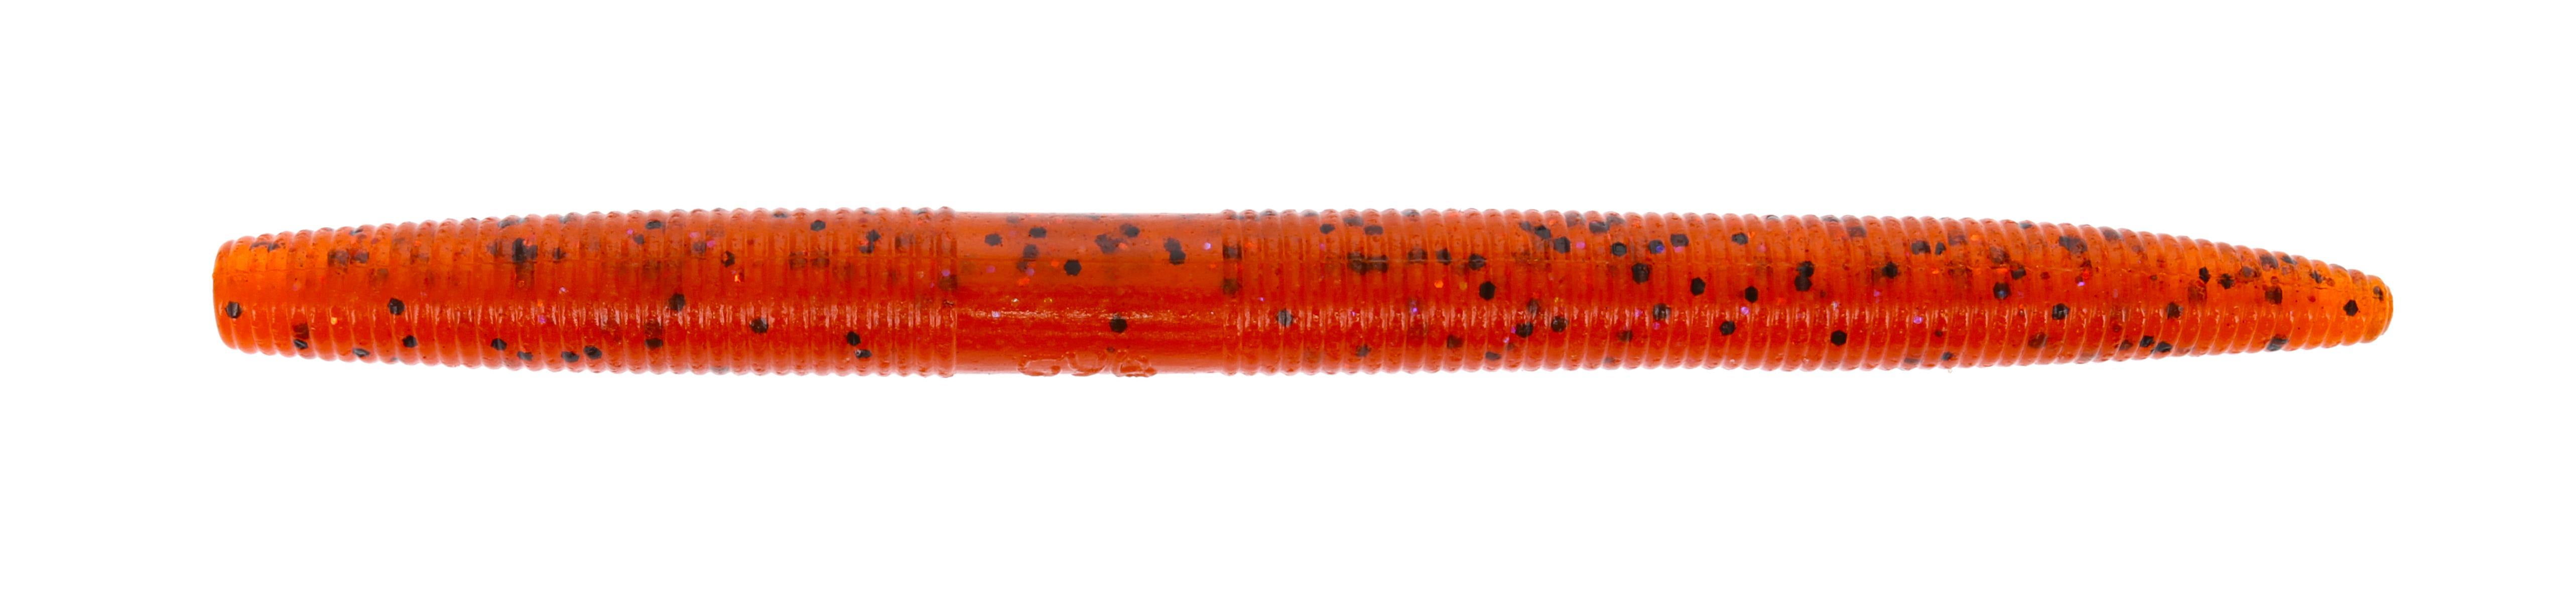 Gary Yamamoto Custom Baits Senko Fishing Lure - Fire Craw - 5 in